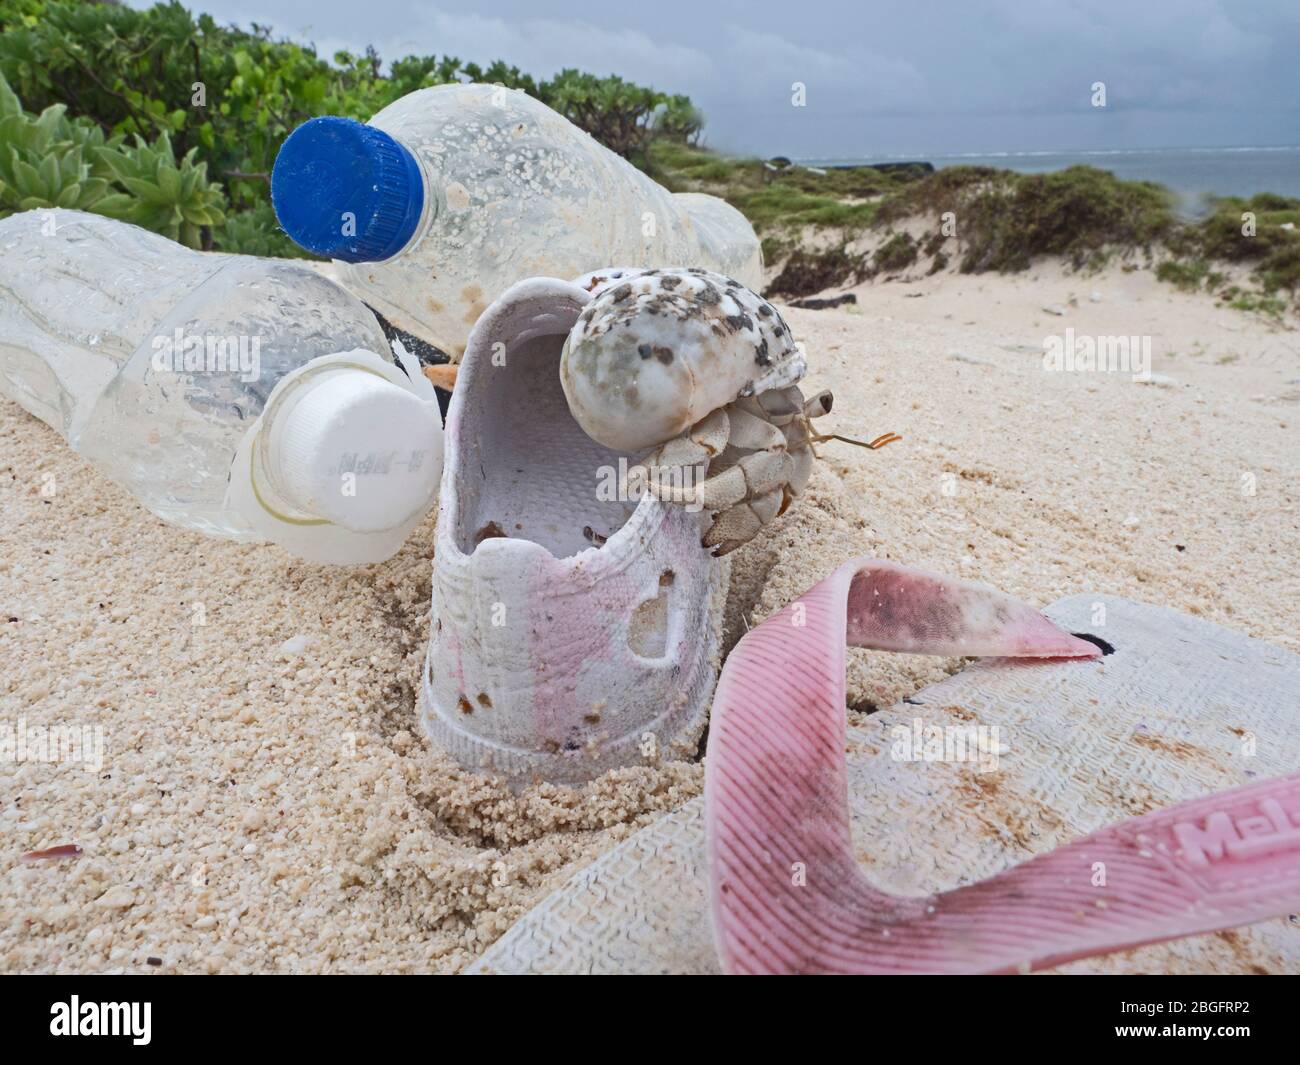 Stawberry Hermit Crab Coenobita perlatus, juvénile, escalade sur la plage lavée en ordures, Wizard Island, Cosmoledo Atoll, Seychelles Banque D'Images